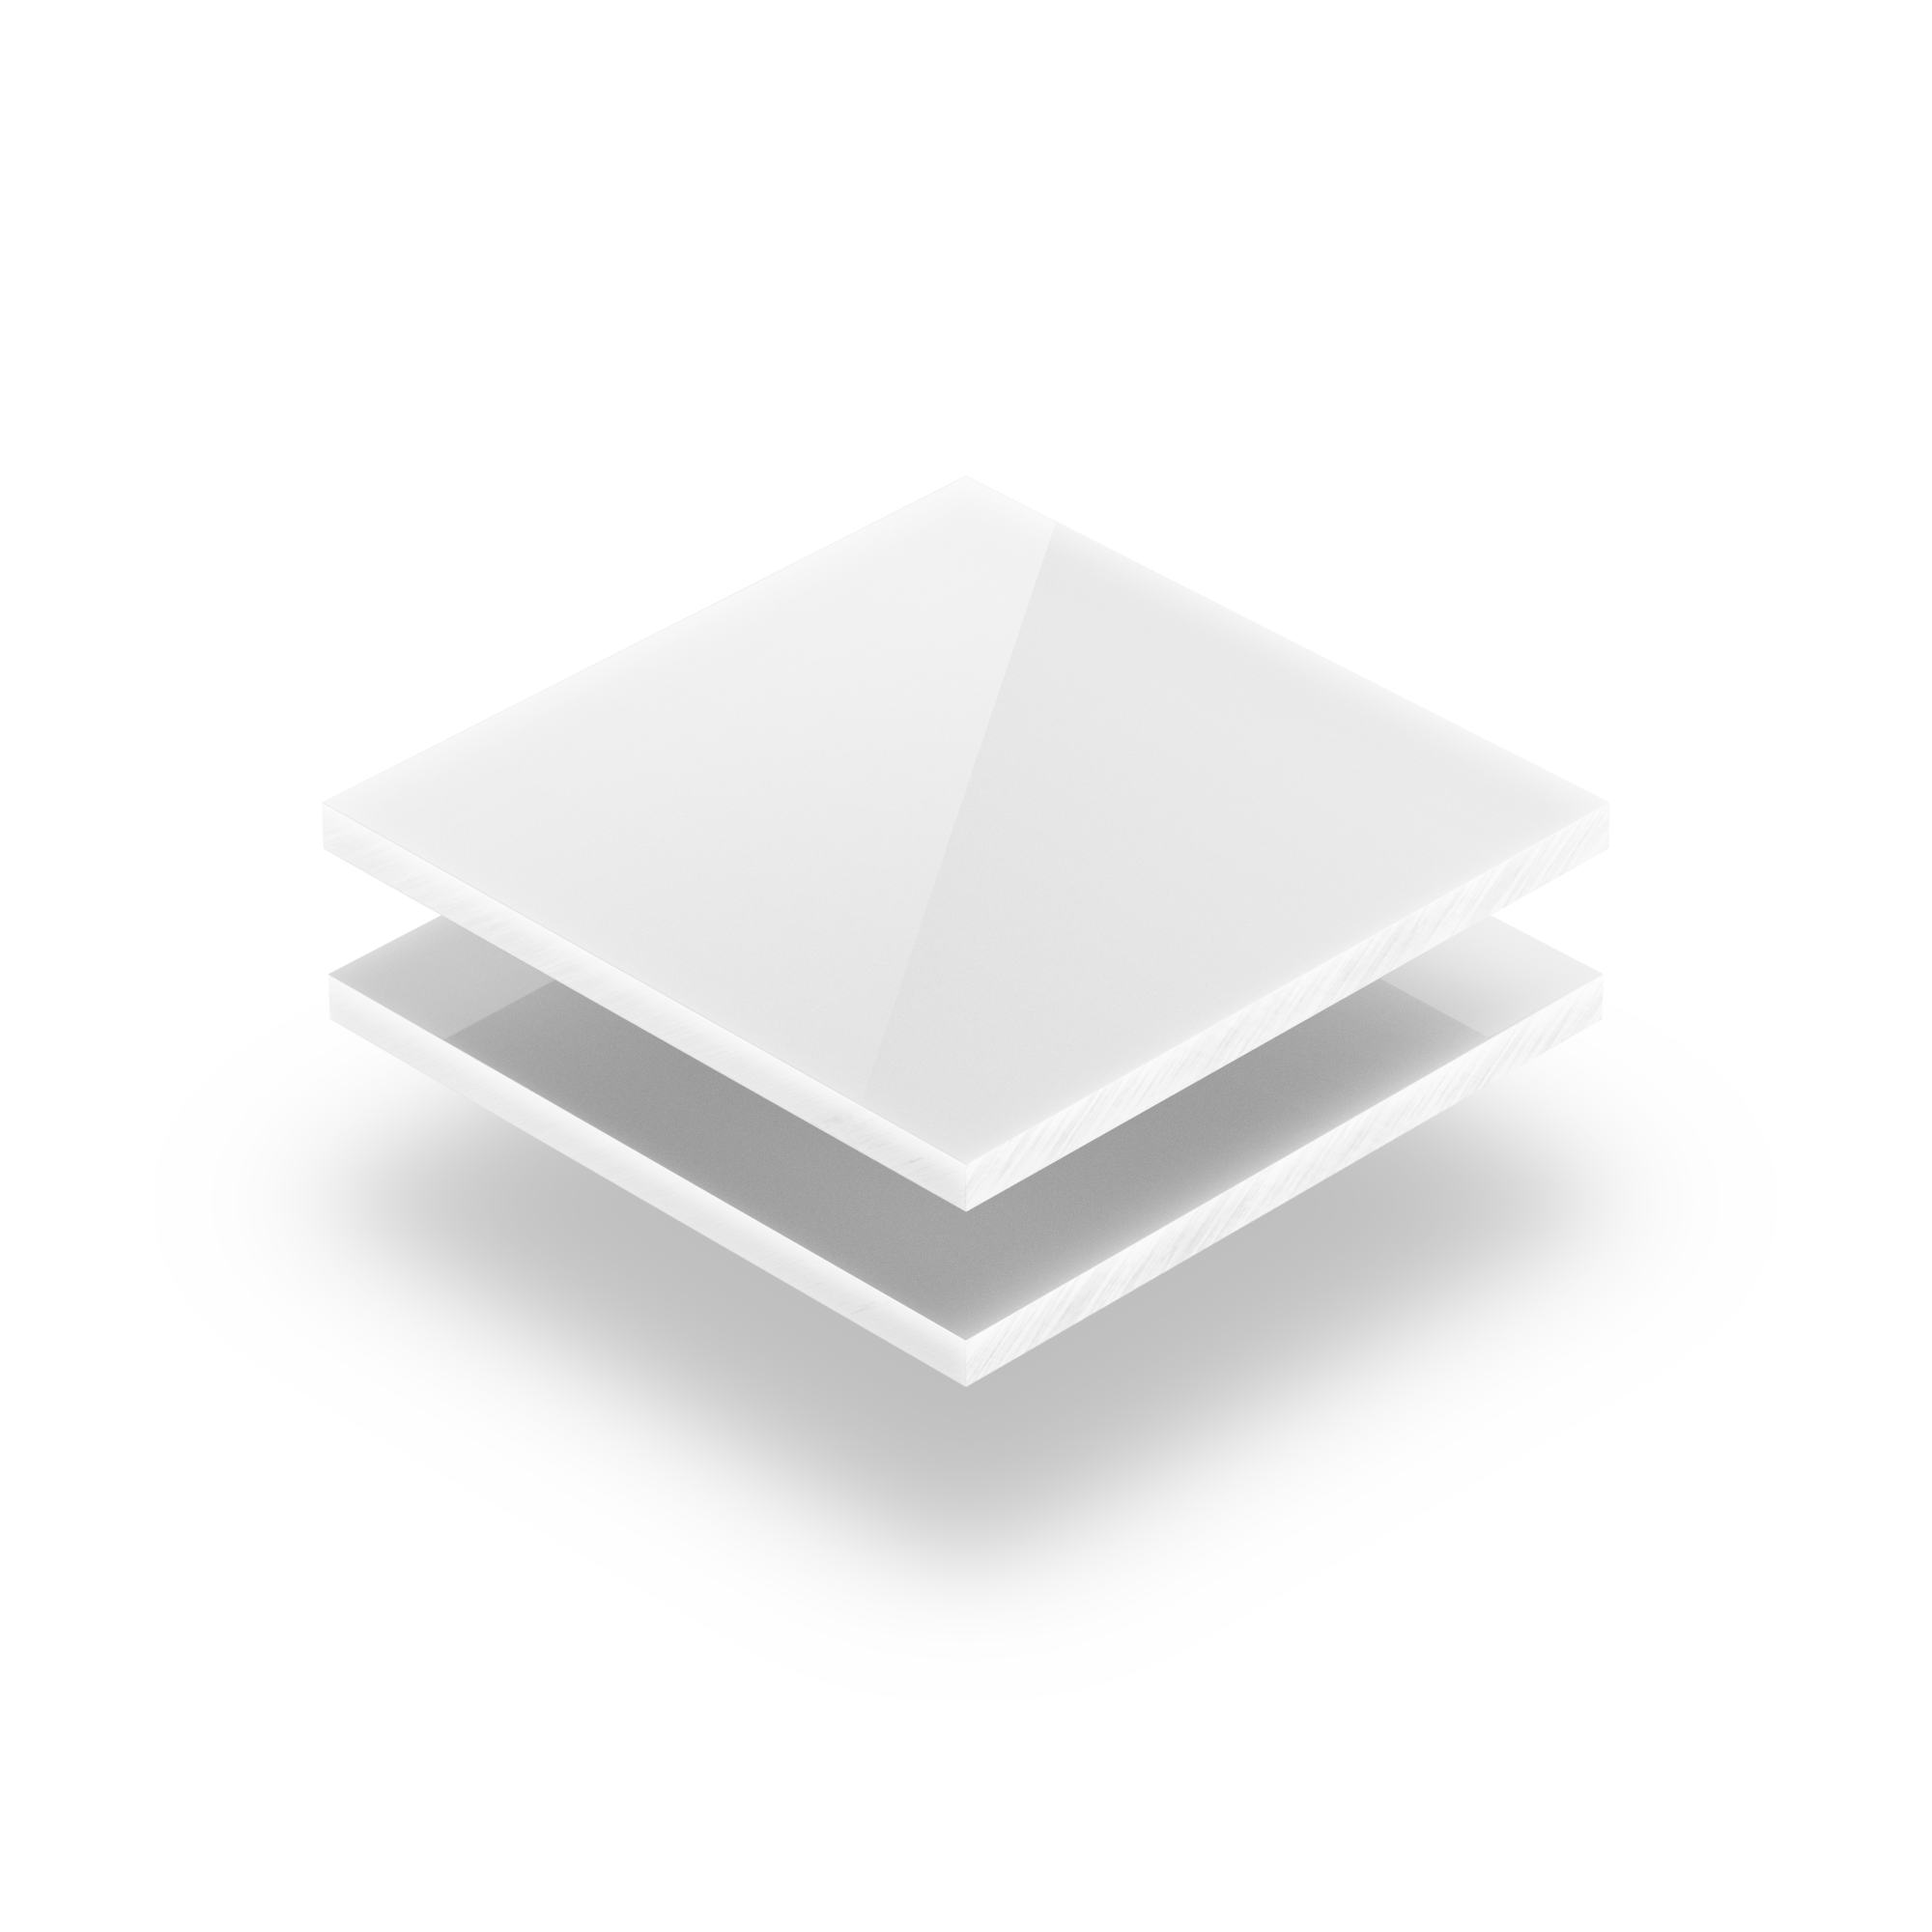 3 plaques acryliques vierges en plexiglas blanc au format 15x20cm